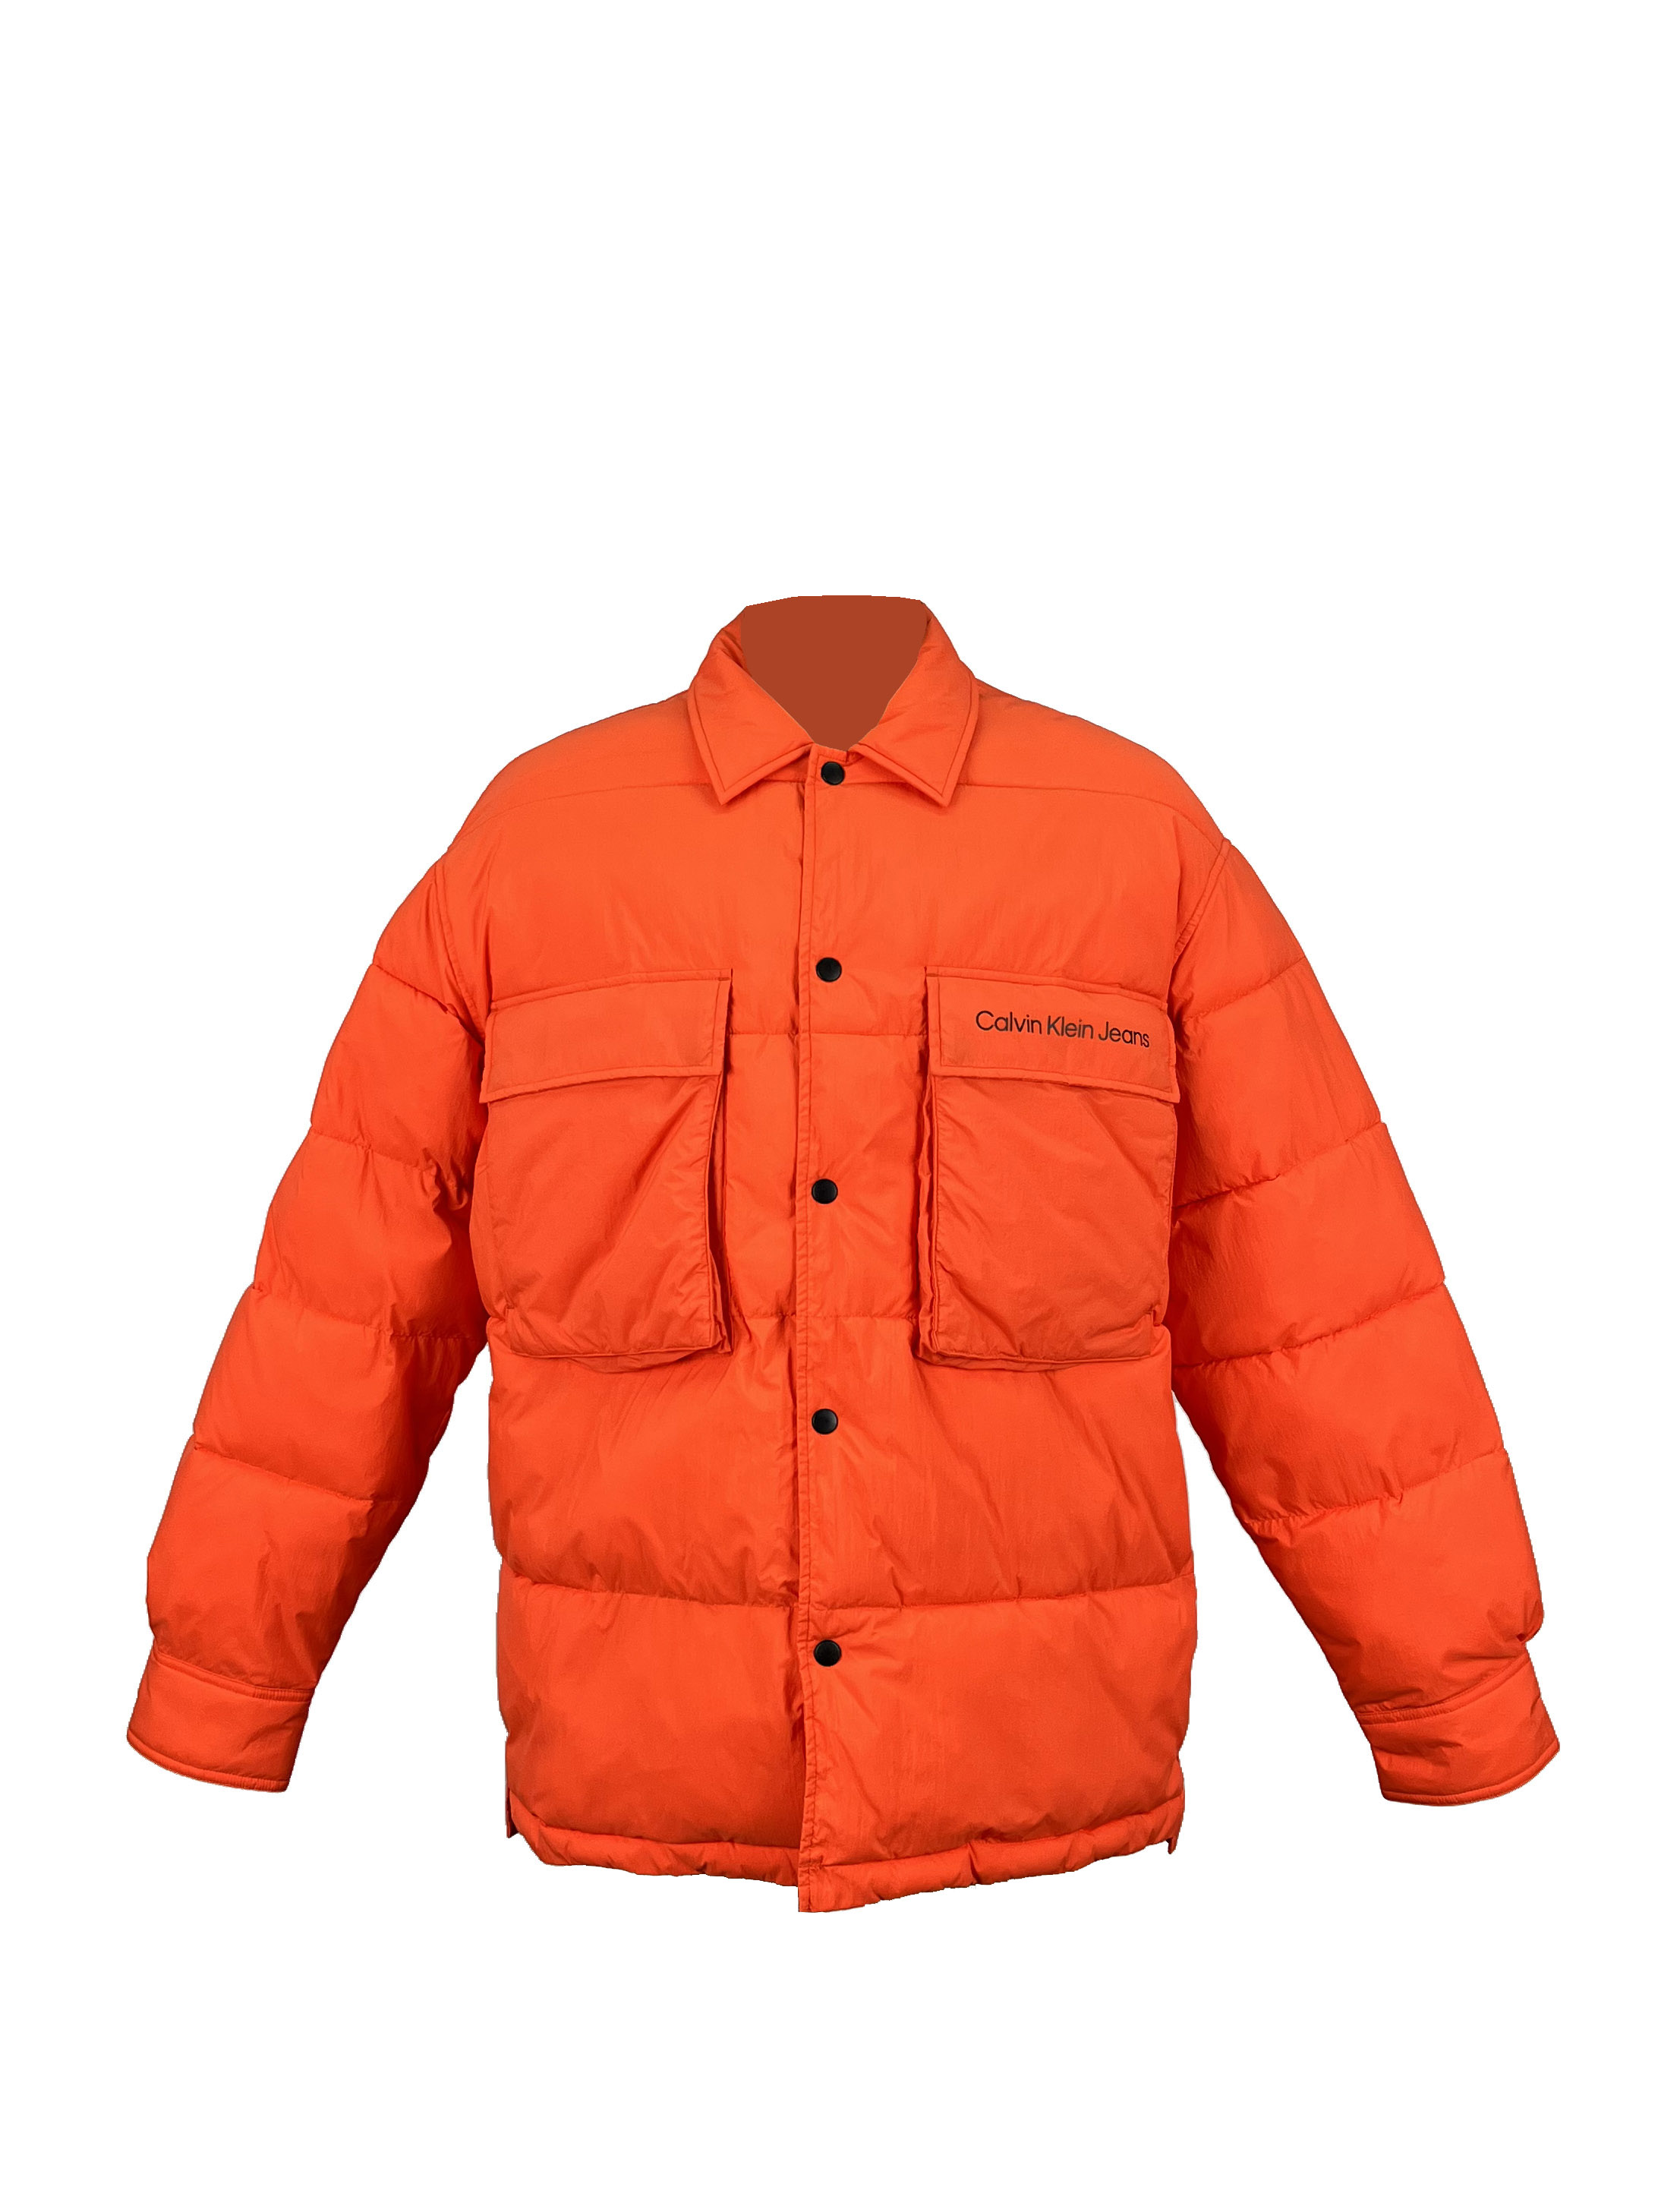 15.padded jacket (1)